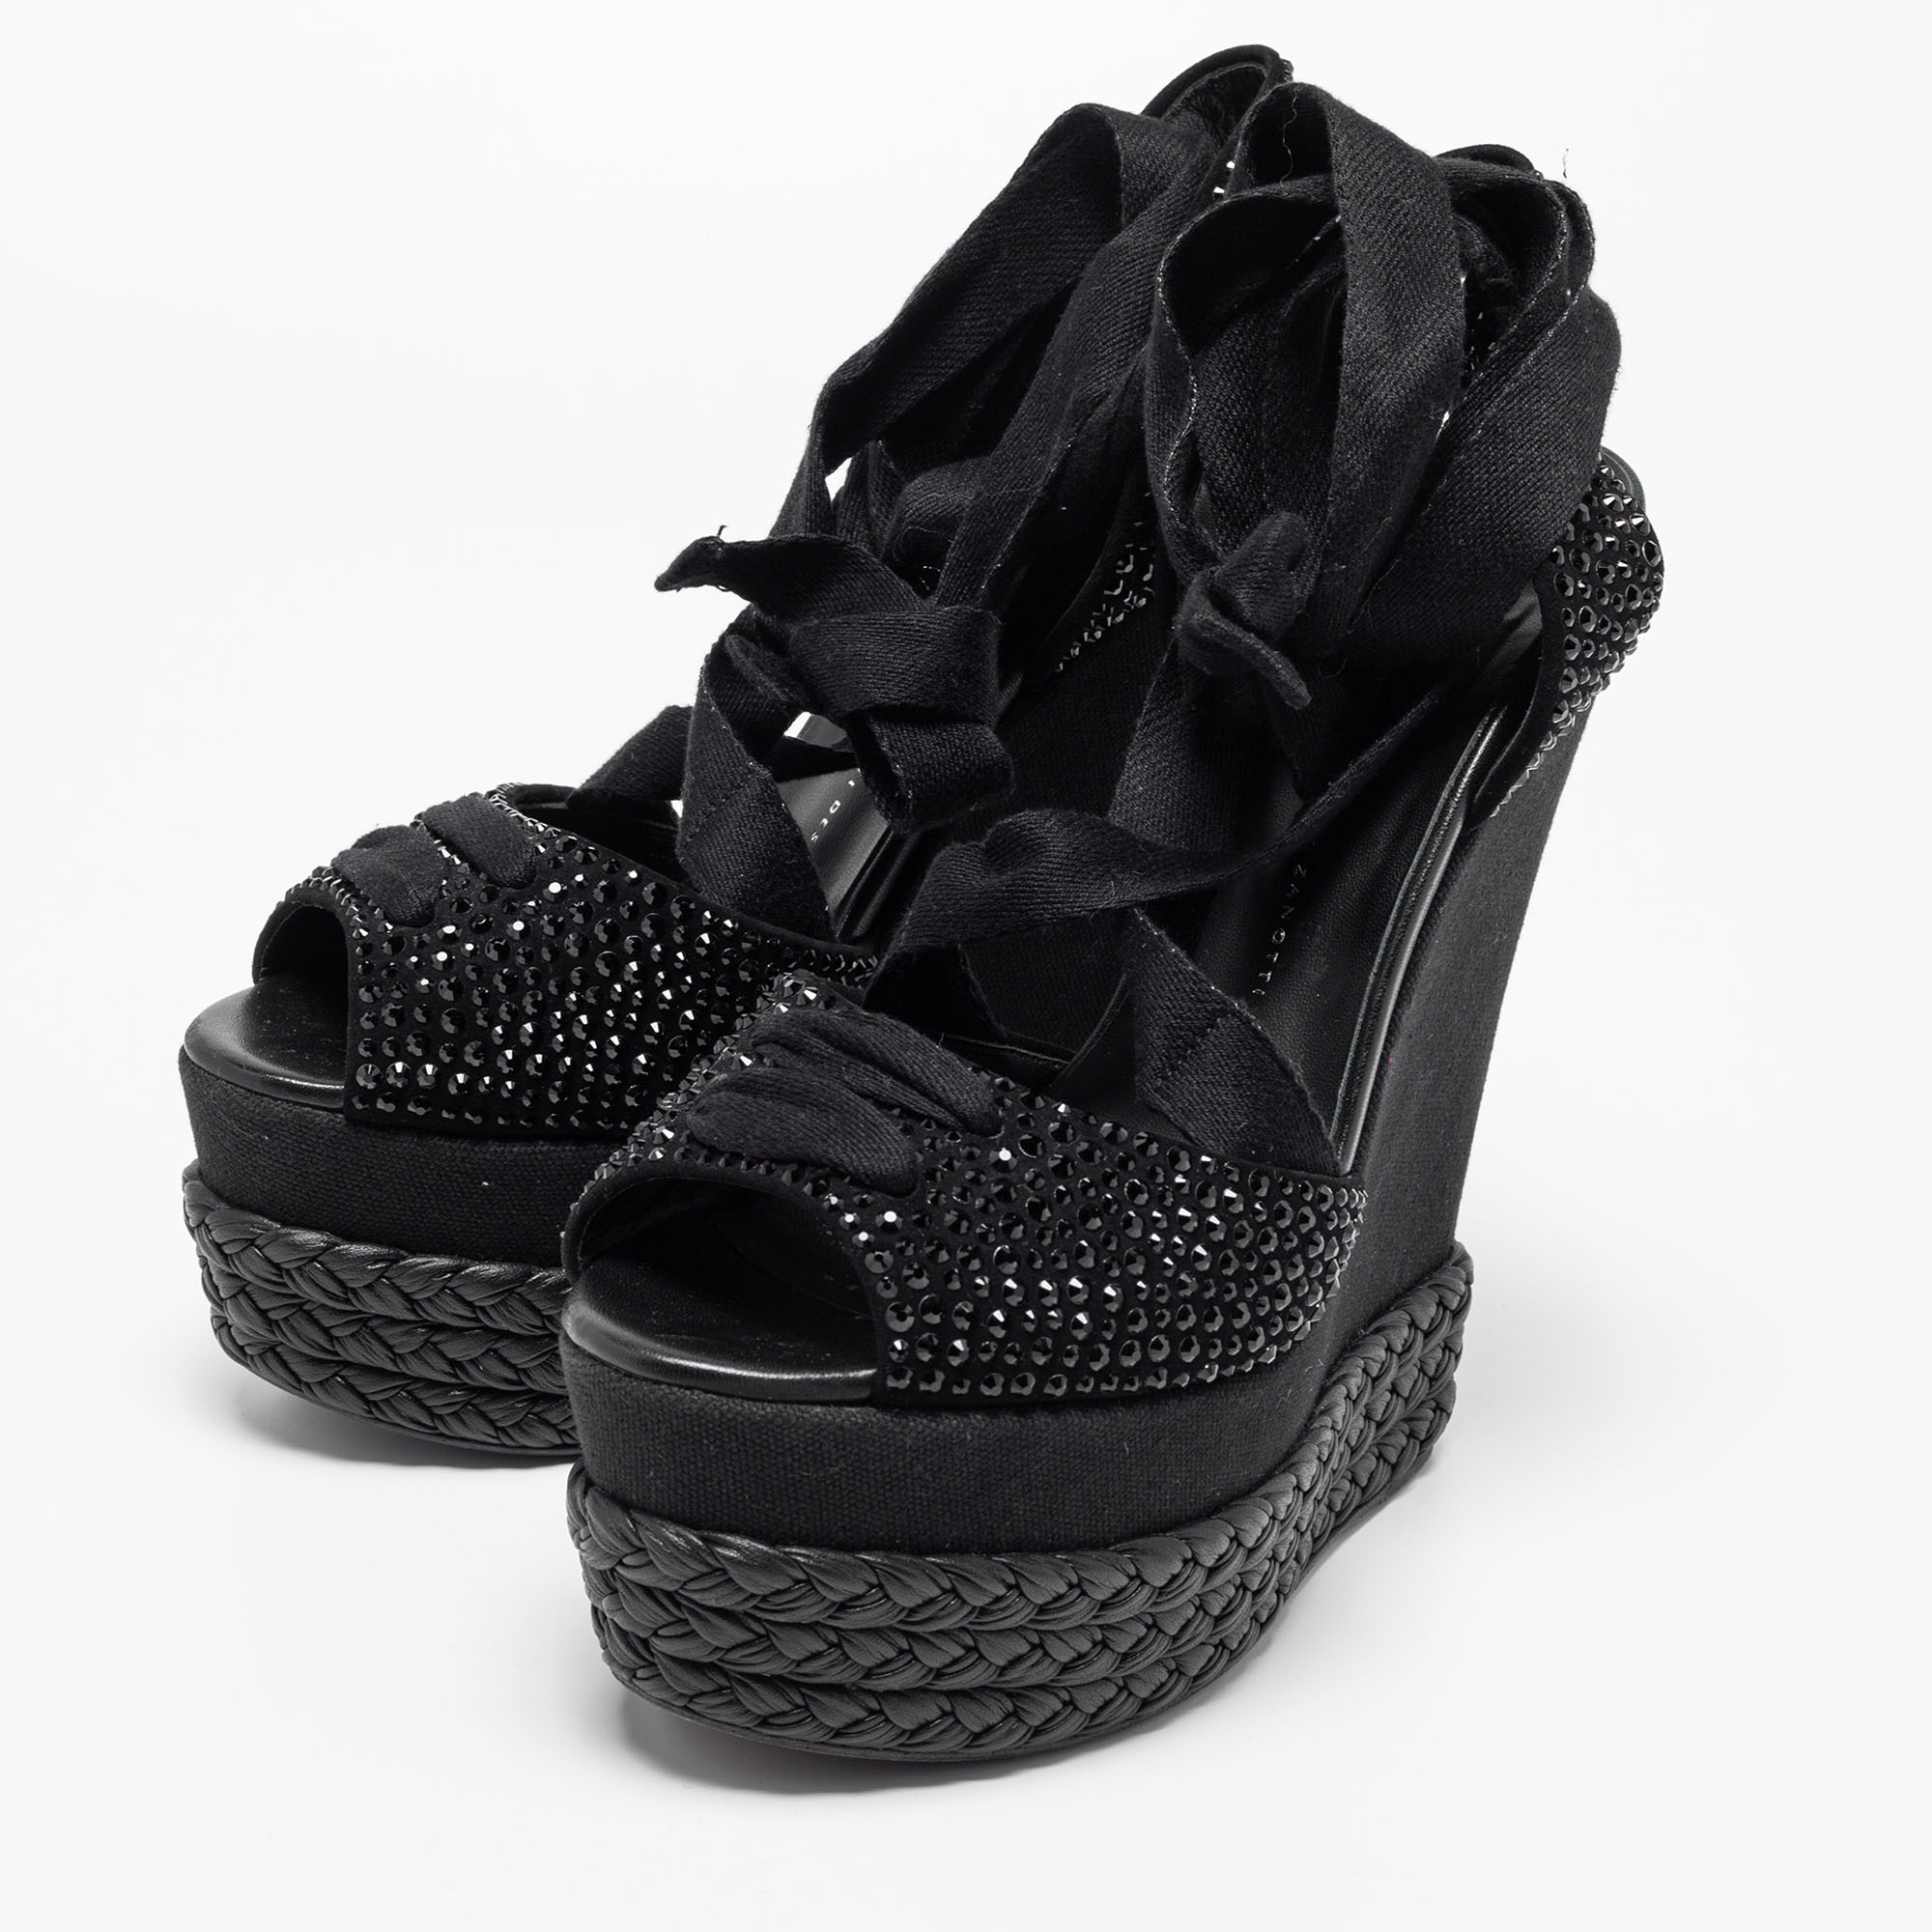 

Giuseppe Zanotti Black Crystal Embellished Suede Espadrille Platform Wedge Ankle Tie Sandals Size